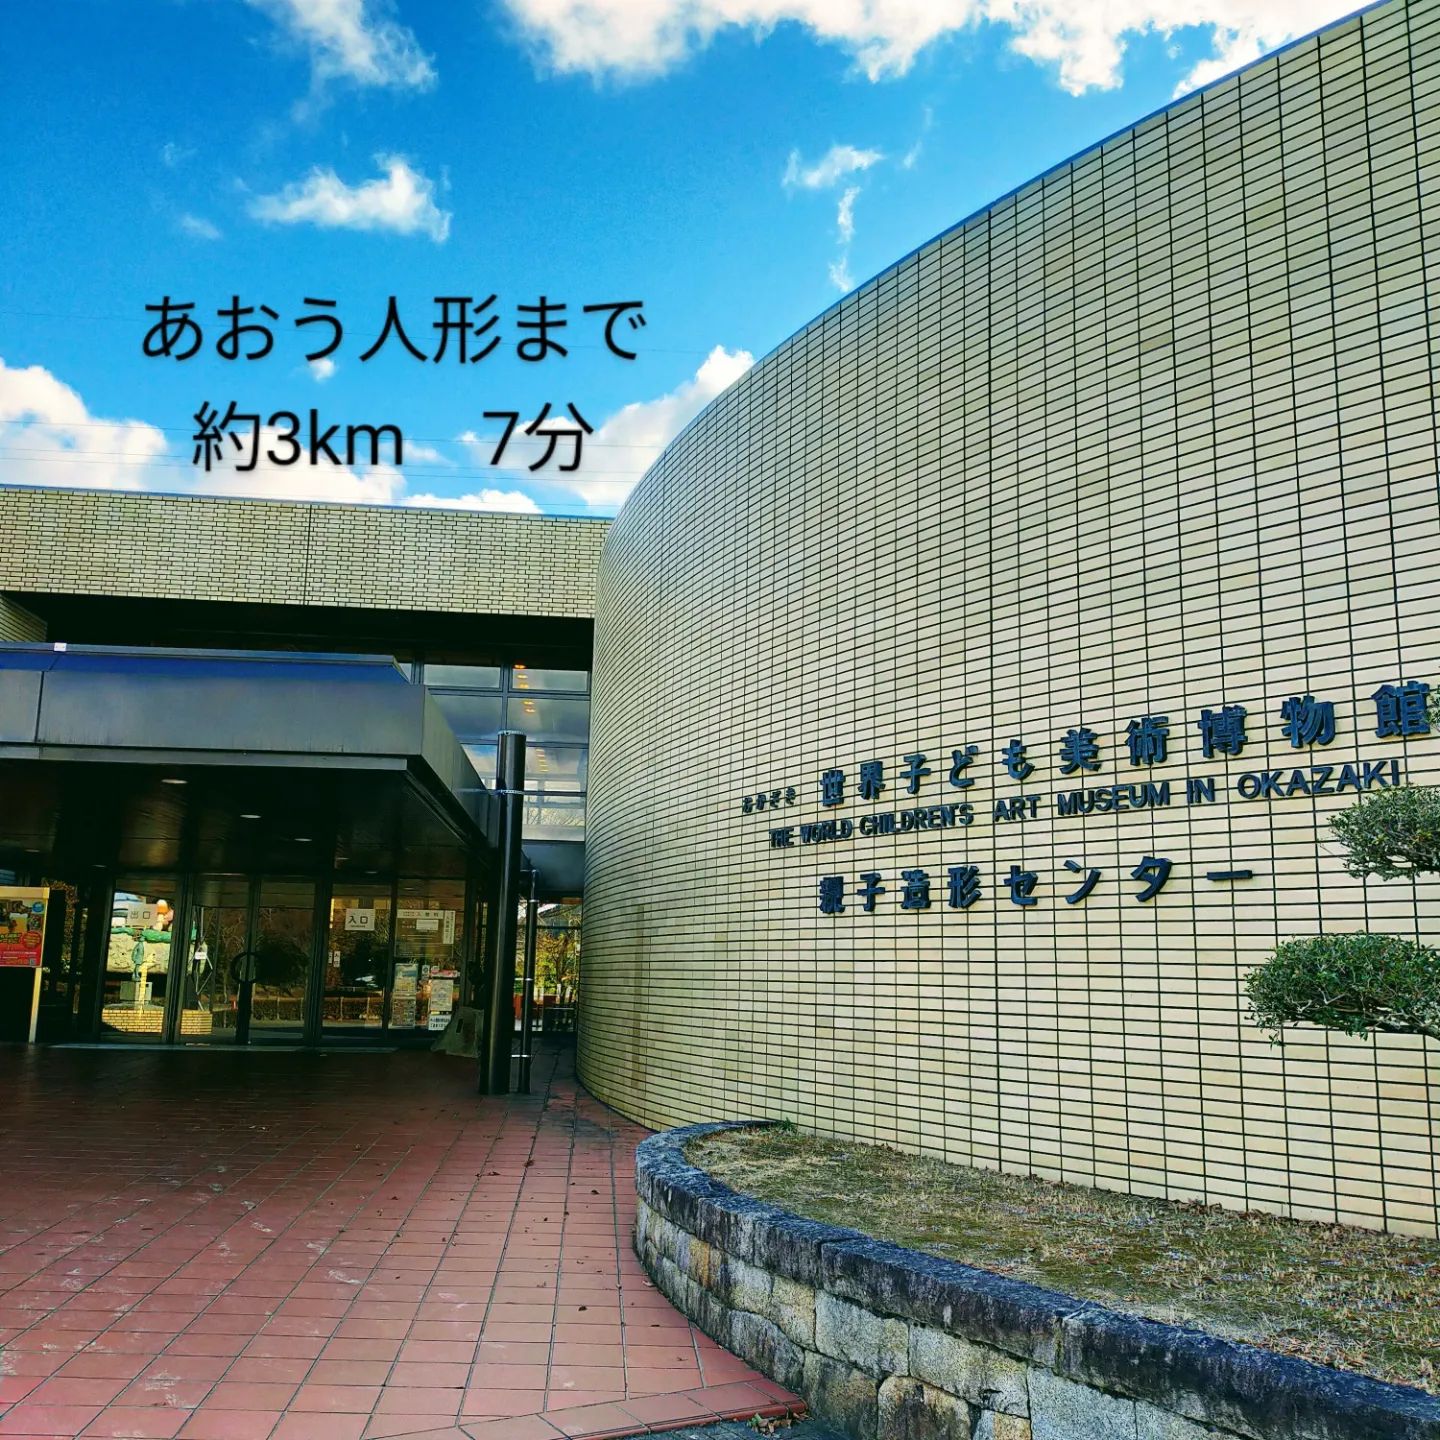 愛知県岡崎市の人形店、あおう人形は、おかざき子供美術博物館より約3km　7分です- from Instagram